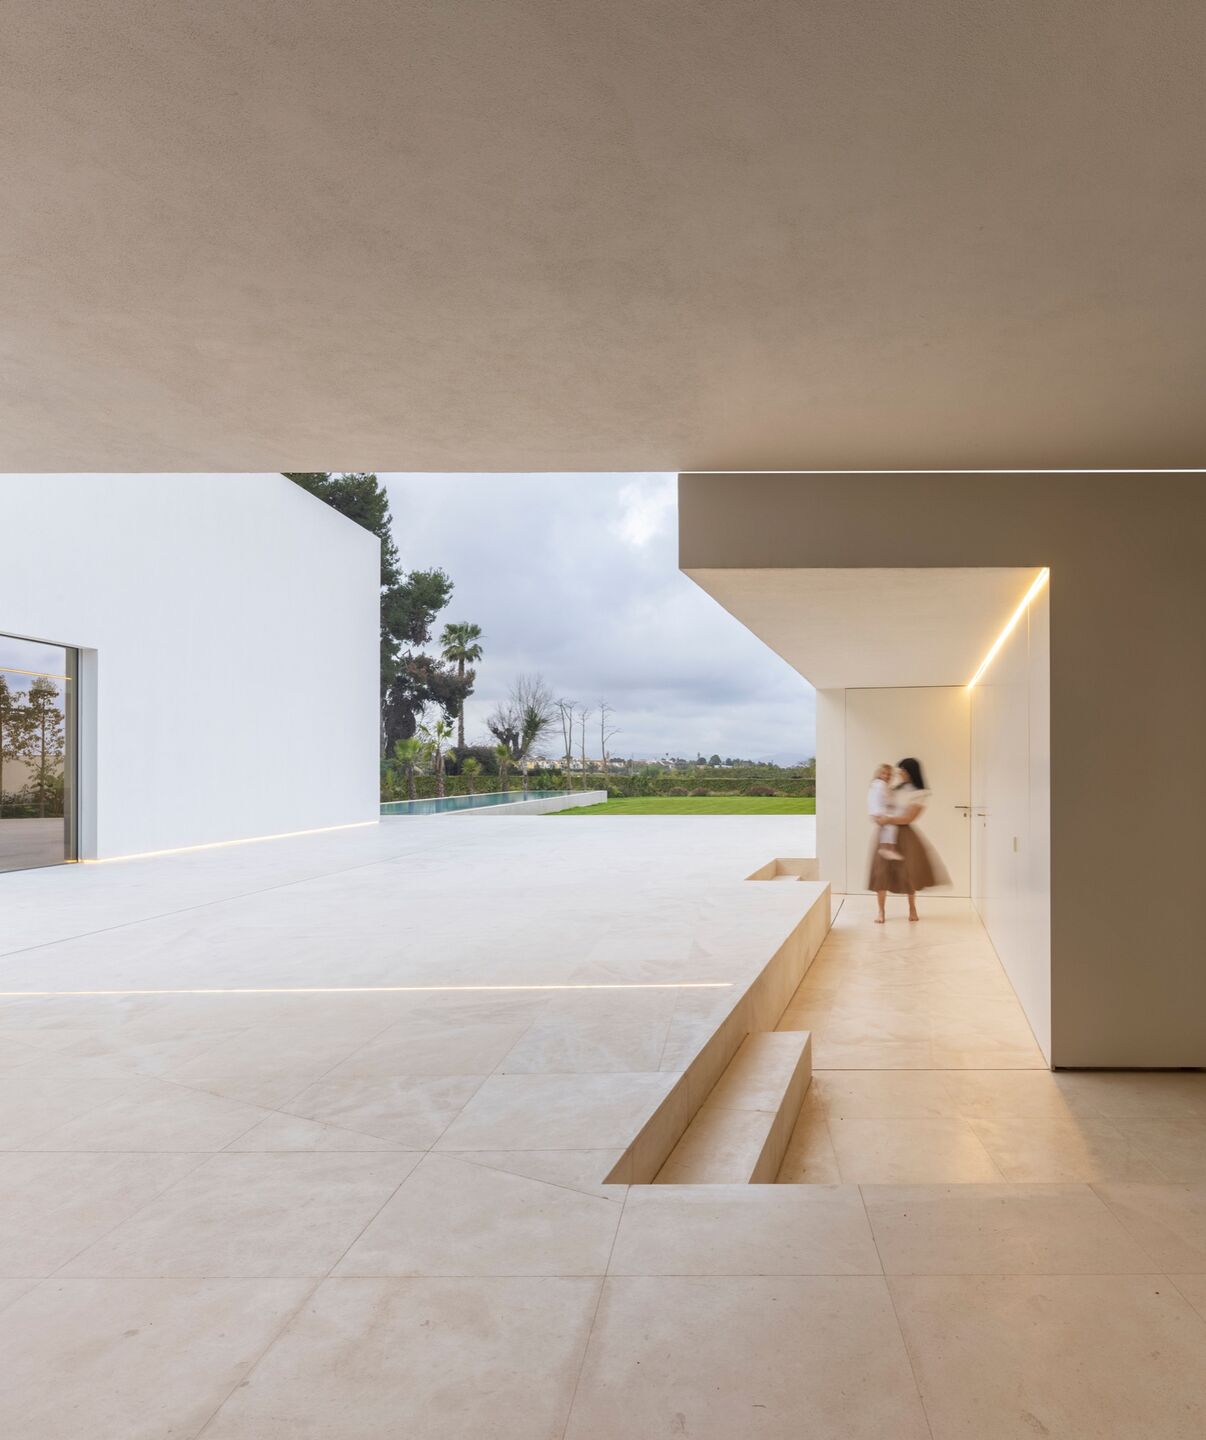 別墅設計,別墅設計案例,Fran Silvestre Arquitectos,西班牙,國外別墅設計案例,巴倫西亞,白色別墅,極簡主義,極簡風格